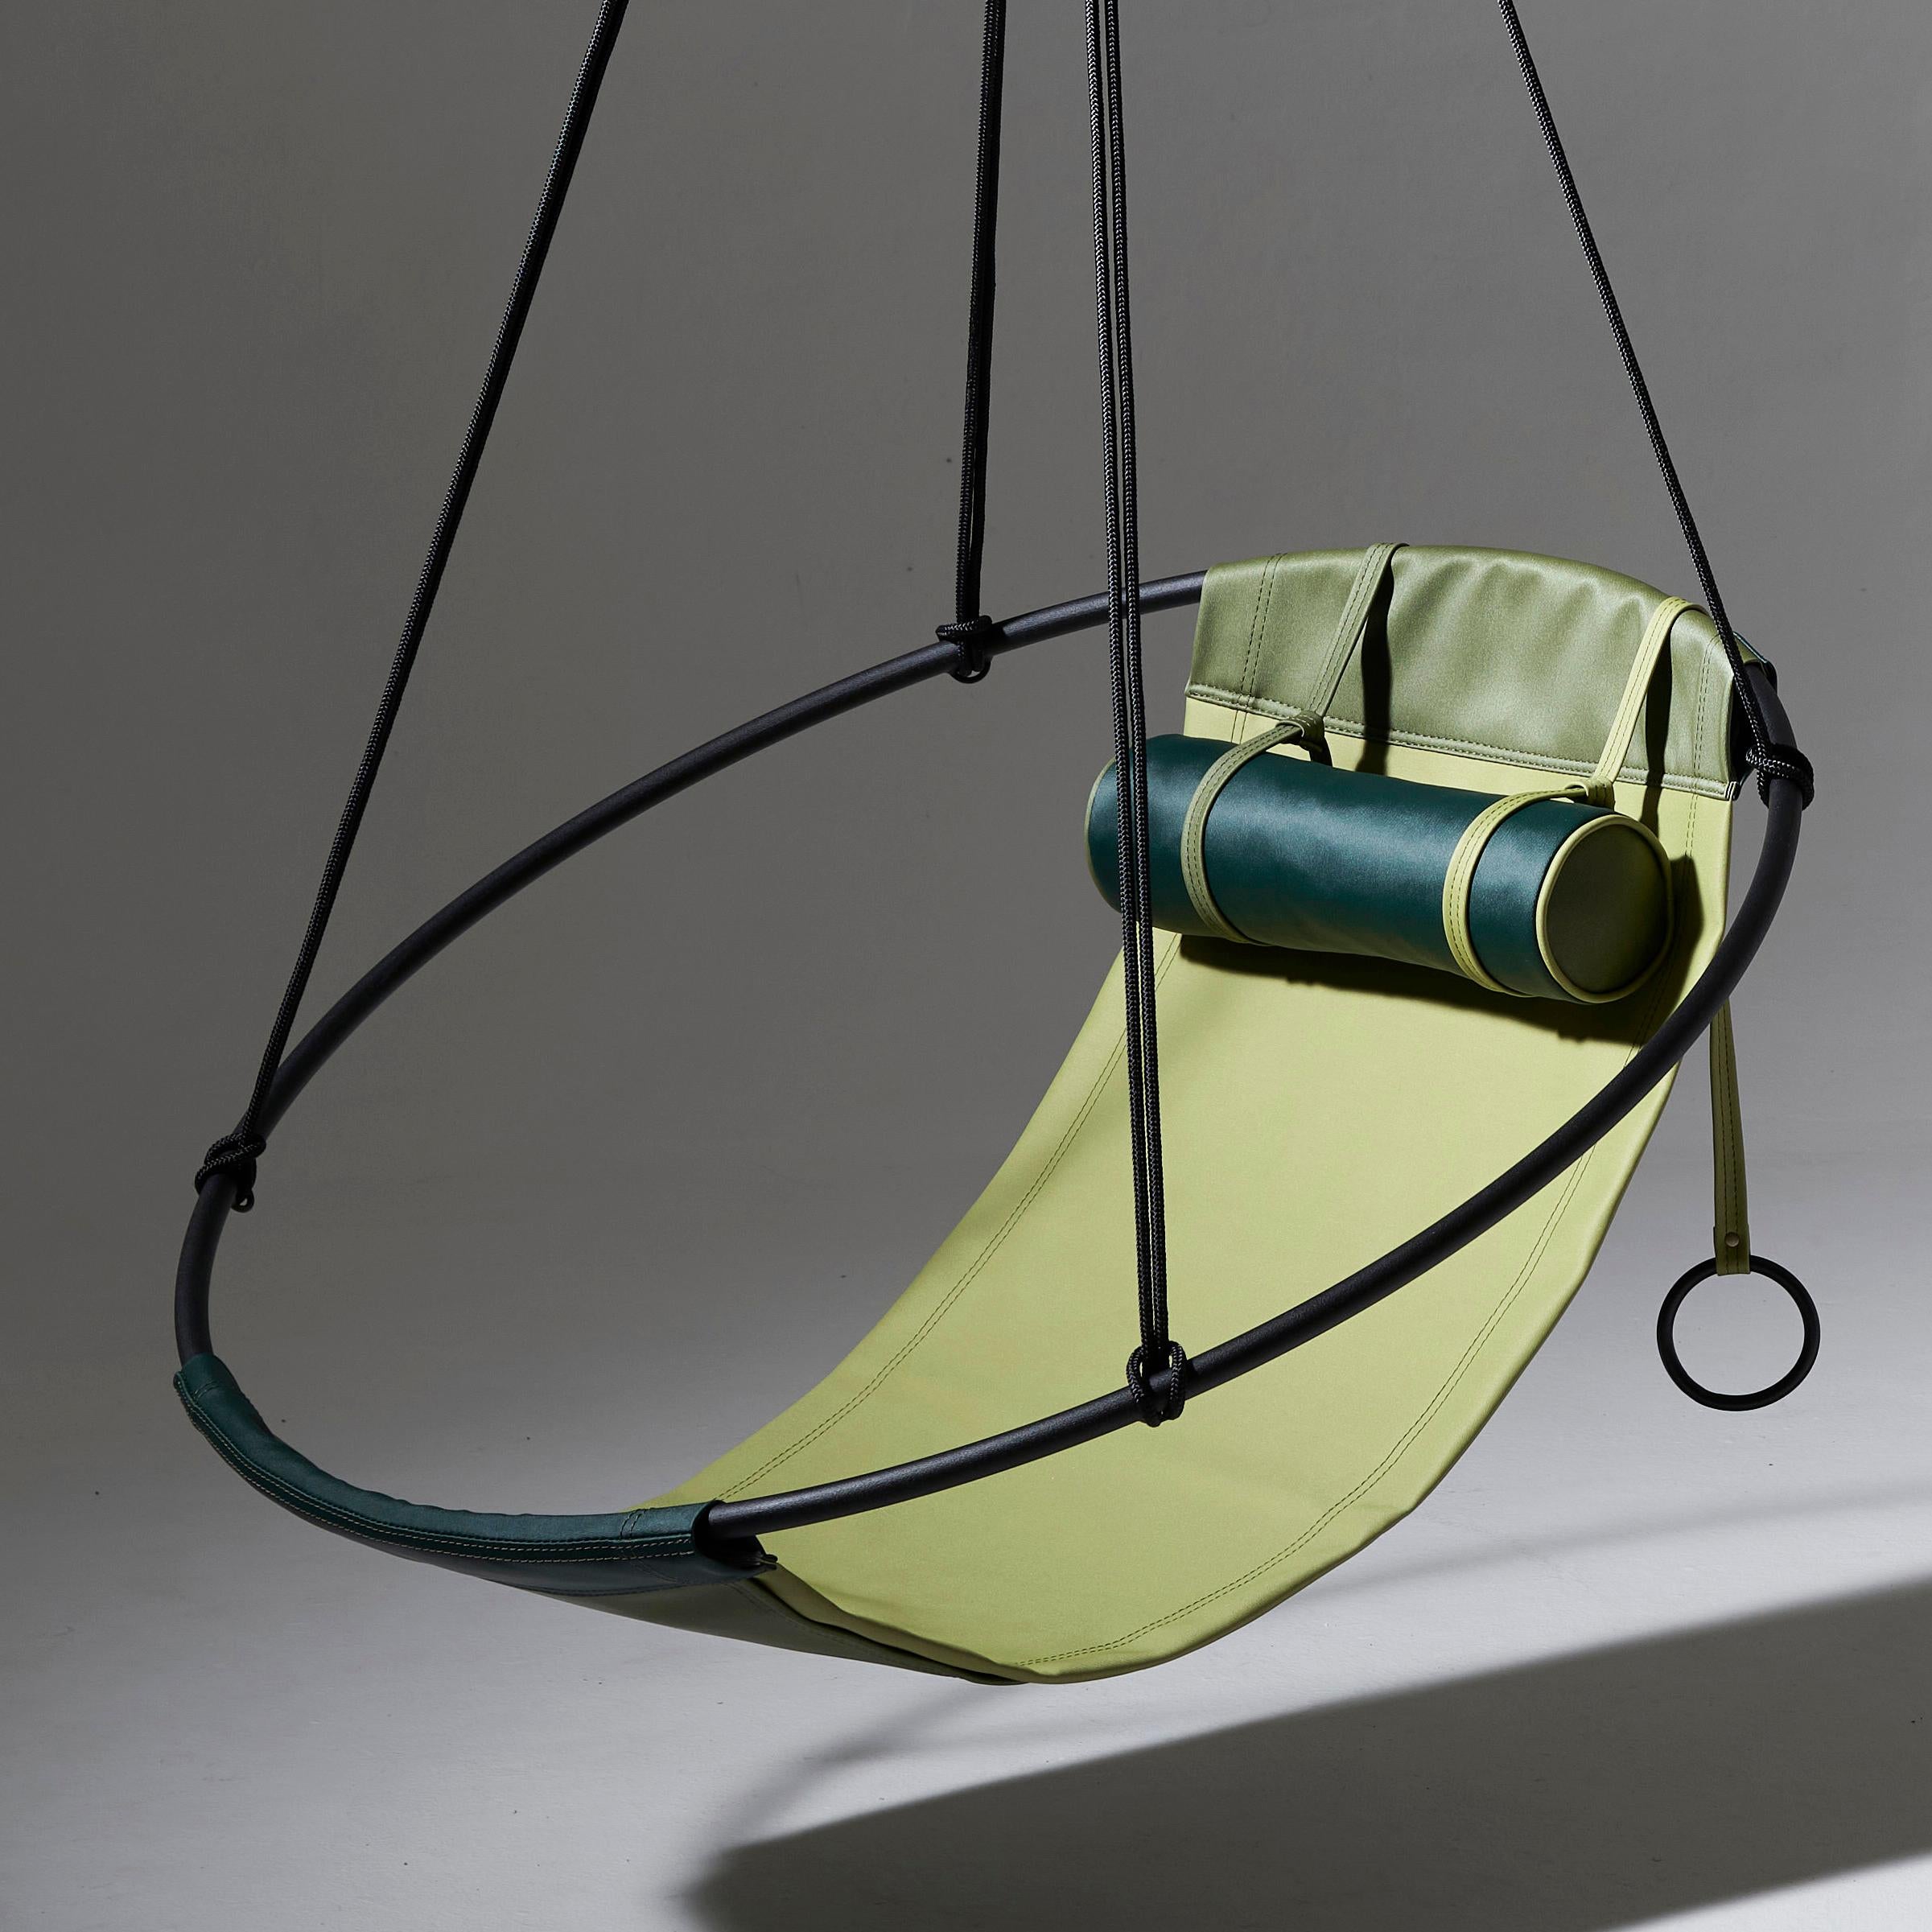 Notre siège de balançoire pour fauteuil suspendu d'extérieur est fabriqué avec le matériau Spradling Silvertex - un matériau végétal très durable et respectueux de l'environnement.

Les slings peuvent être commandés séparément, mais ils peuvent